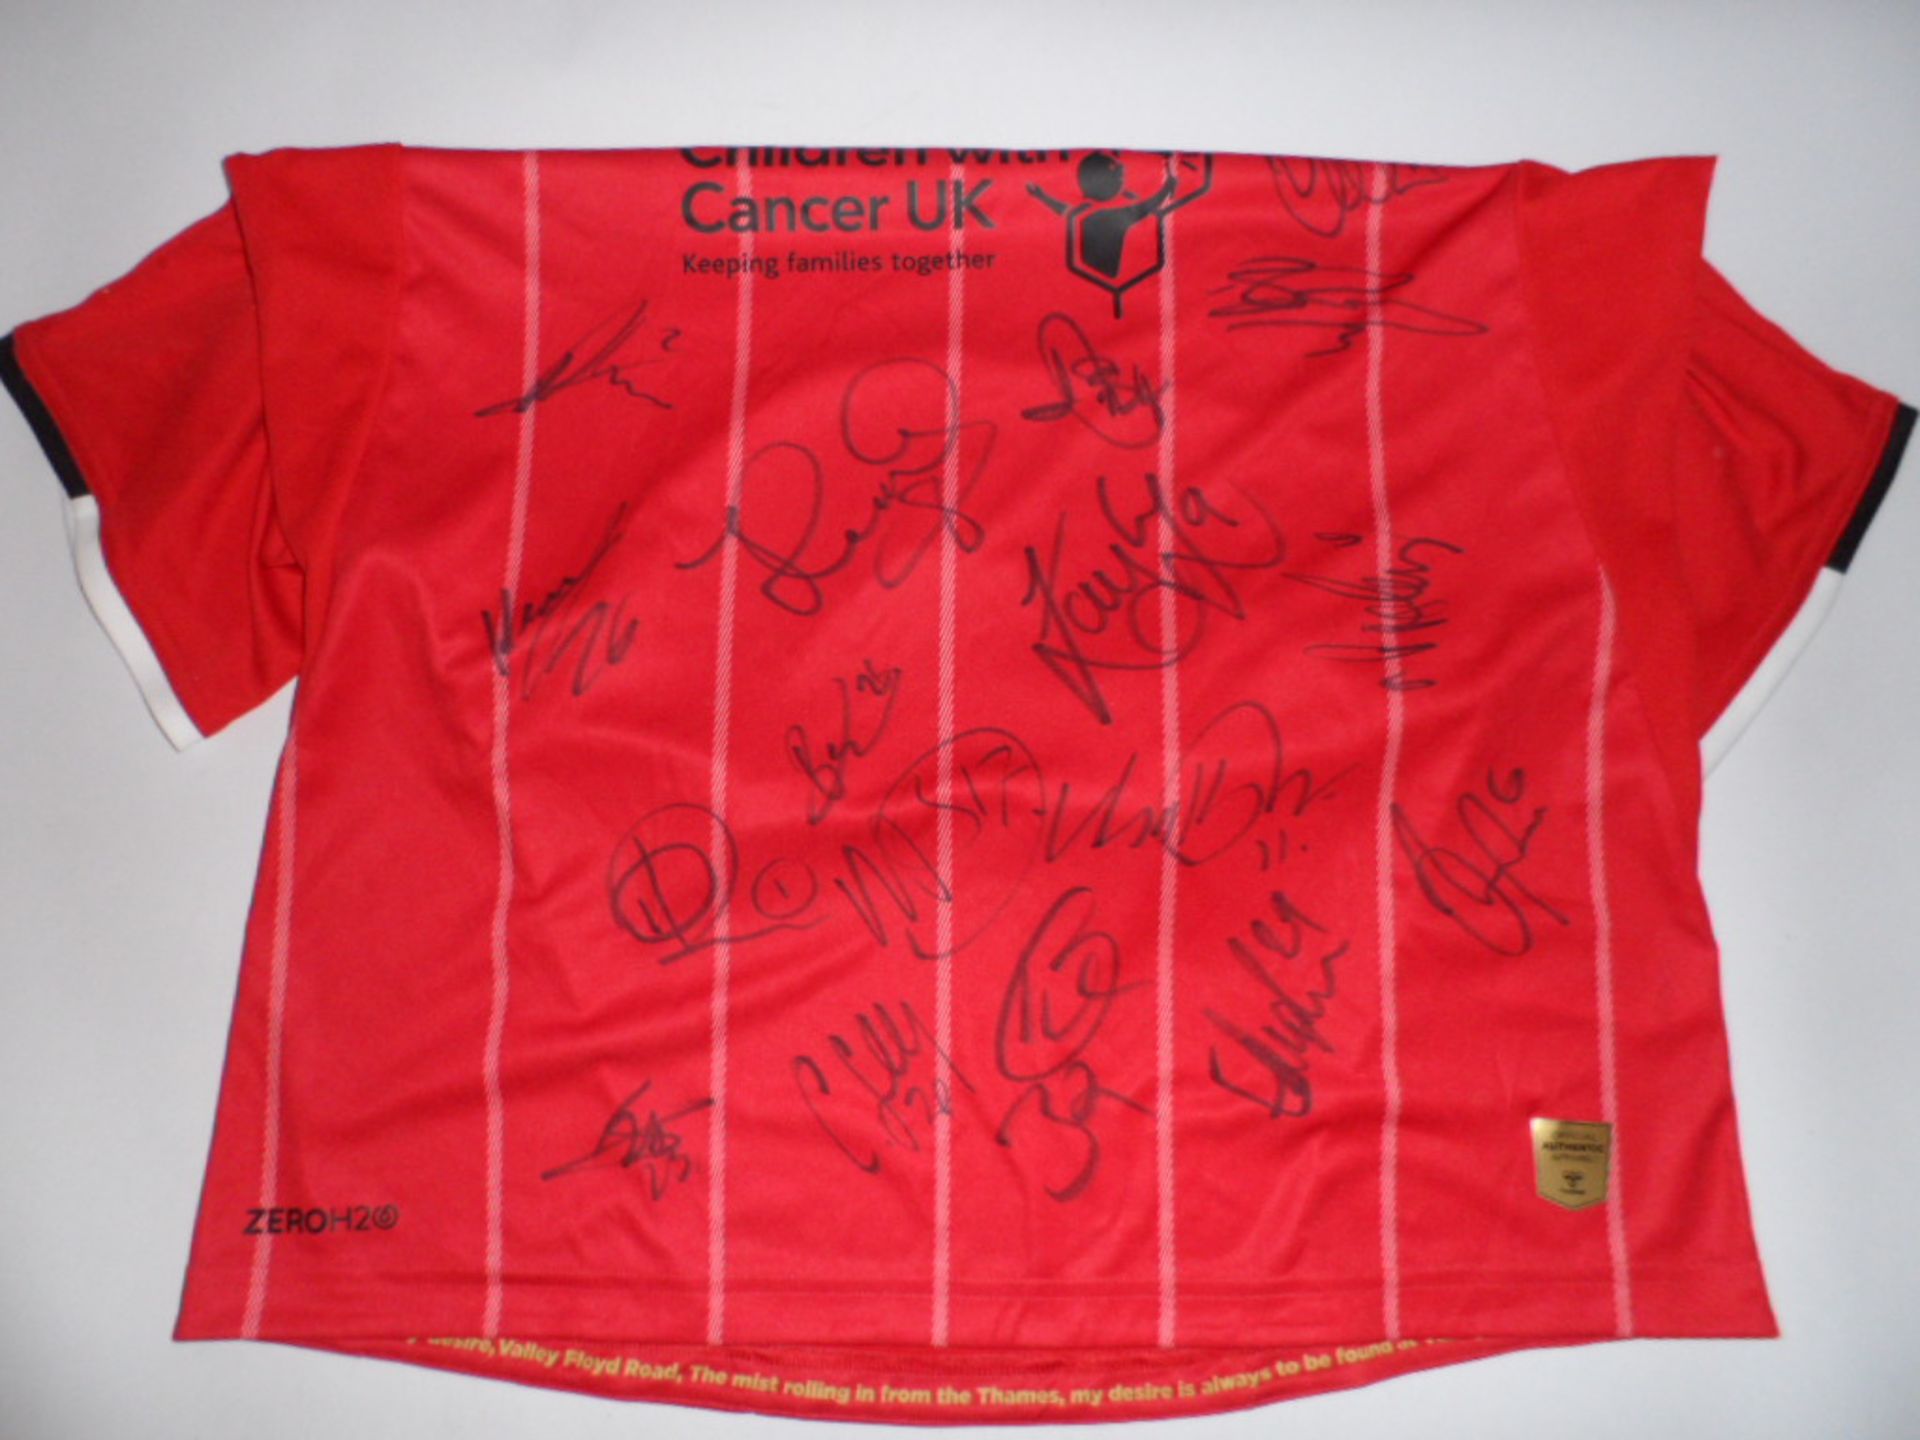 Charlton athletic Hummel 19/20 season shirt bearing signatures (unverified) - Image 3 of 3